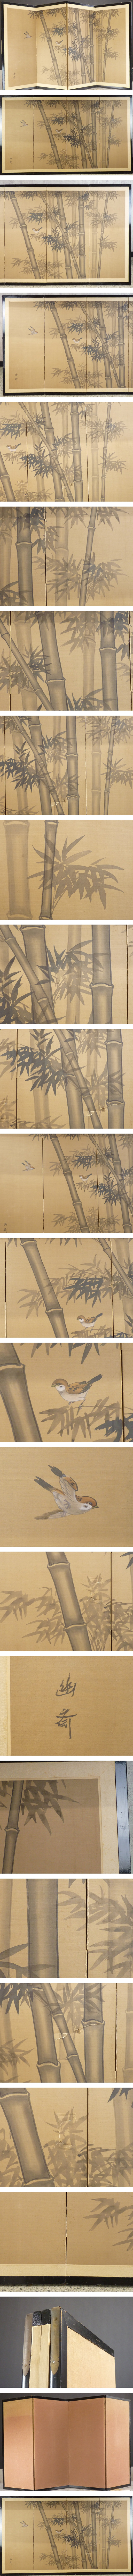 格安特売幽斎 銘 竹に雀図 小屏風 高さ 約91㎝ 四曲半双 絹本肉筆 日本画 花鳥図 花鳥、鳥獣